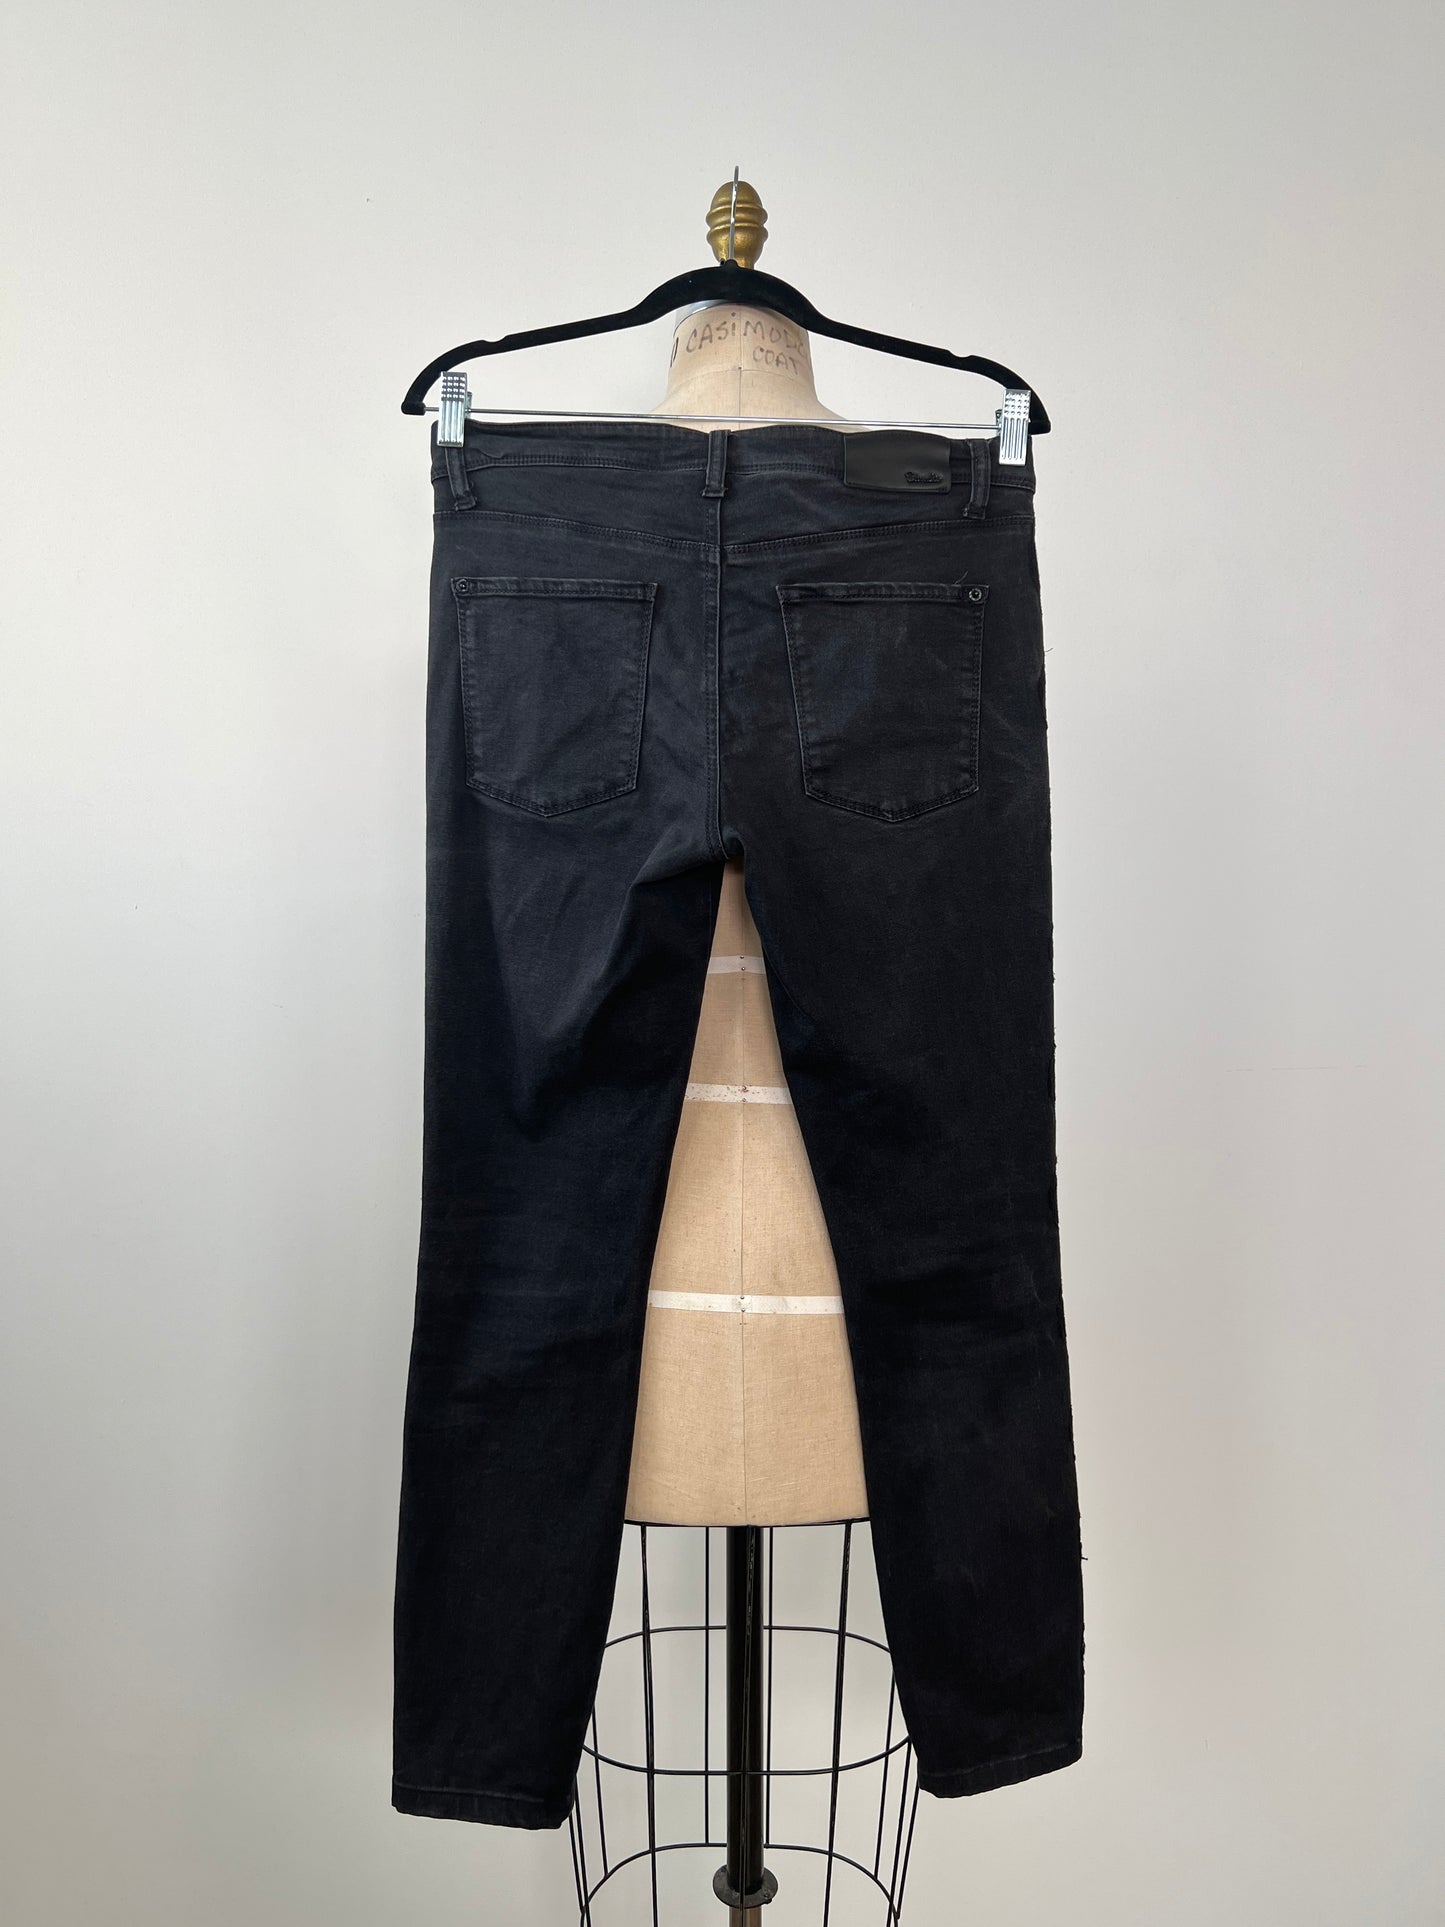 Pantalon skinny en denim  noir usé à galons de dentelle (6)